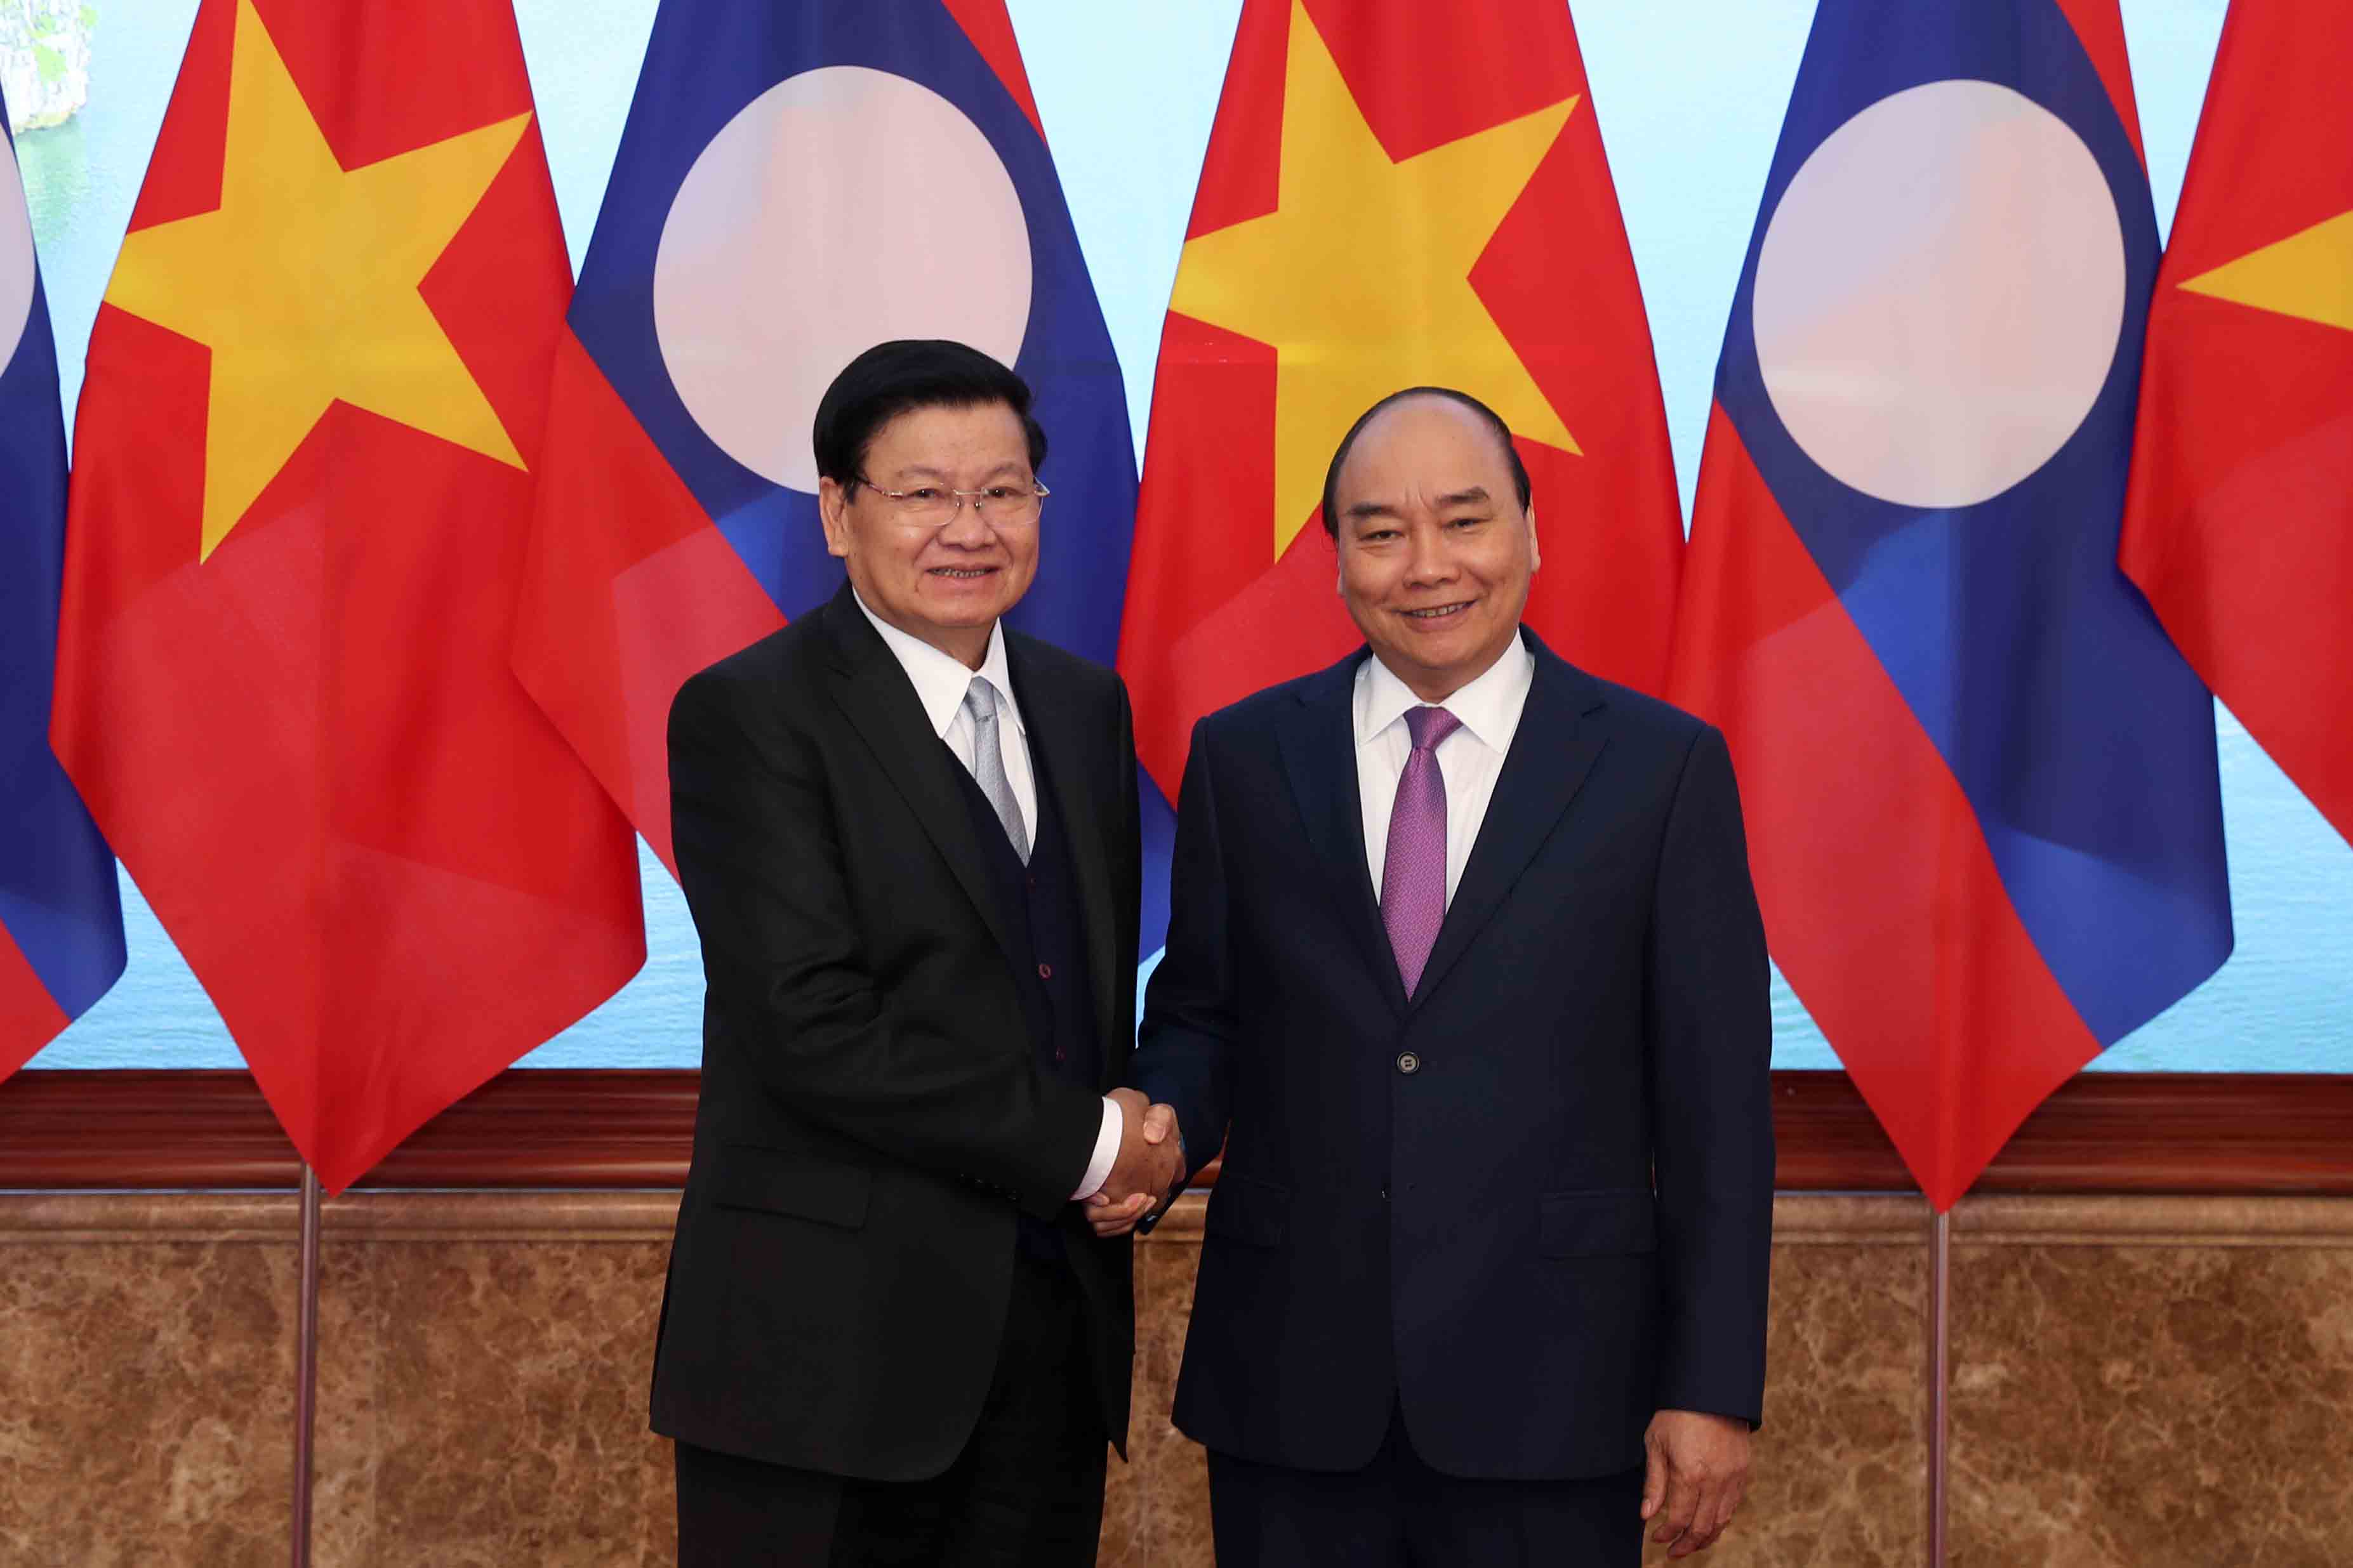 Việt - Lào ký 17 thỏa thuận hợp tác: Việt Nam và Lào mới đây đã ký kết 17 thỏa thuận hợp tác trong lĩnh vực cá nhân, tài chính, đầu tư, an ninh, quốc phòng...và nhiều hơn nữa. Những thỏa thuận này sẽ được triển khai trong thời gian sắp tới. Xem hình ảnh để hiểu thêm về sự quan trọng của hợp tác này đối với cả hai quốc gia.